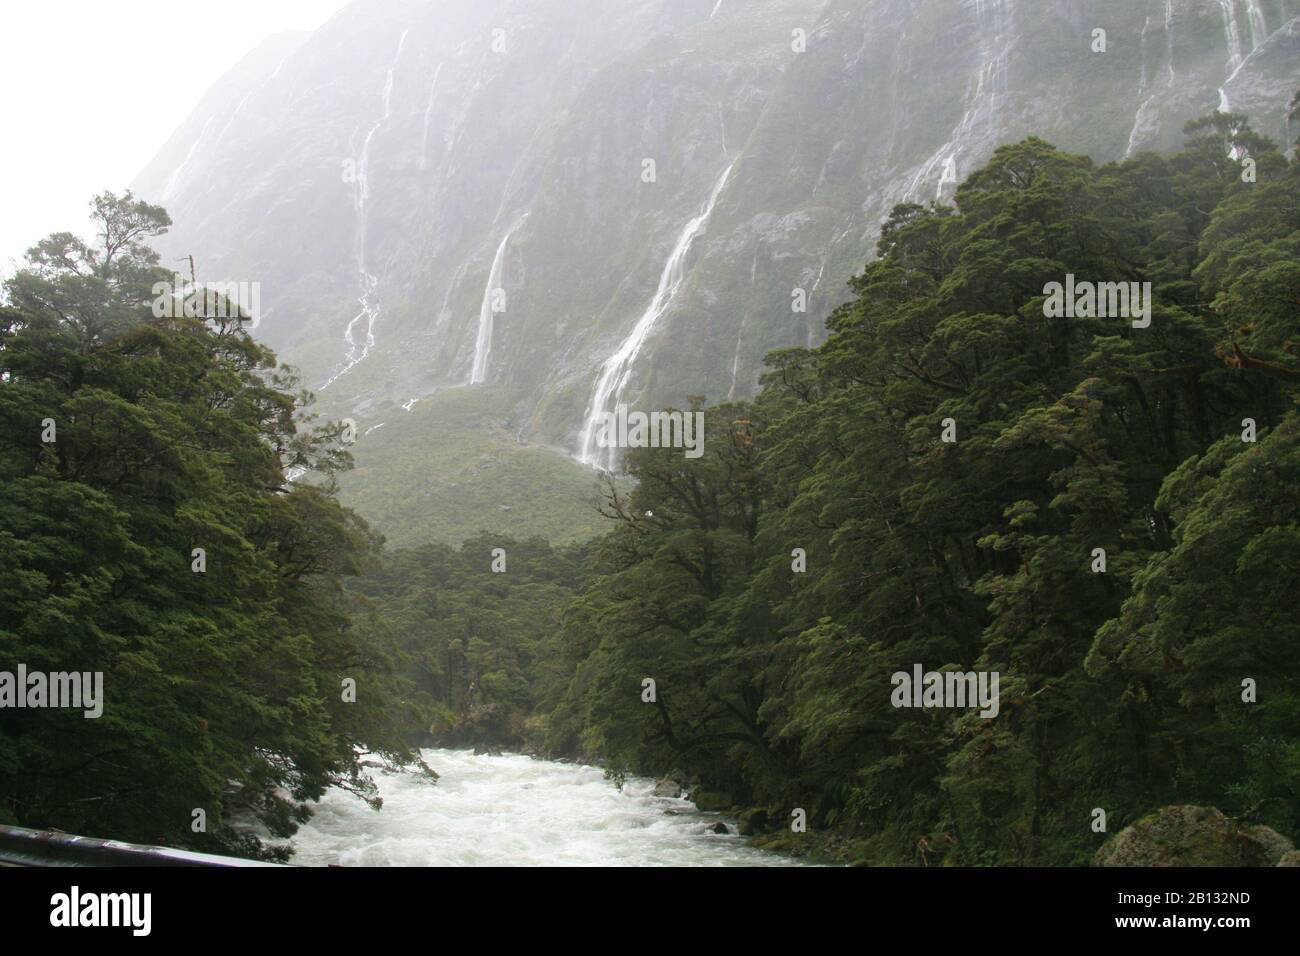 nature and the world around new Zealand Stock Photo